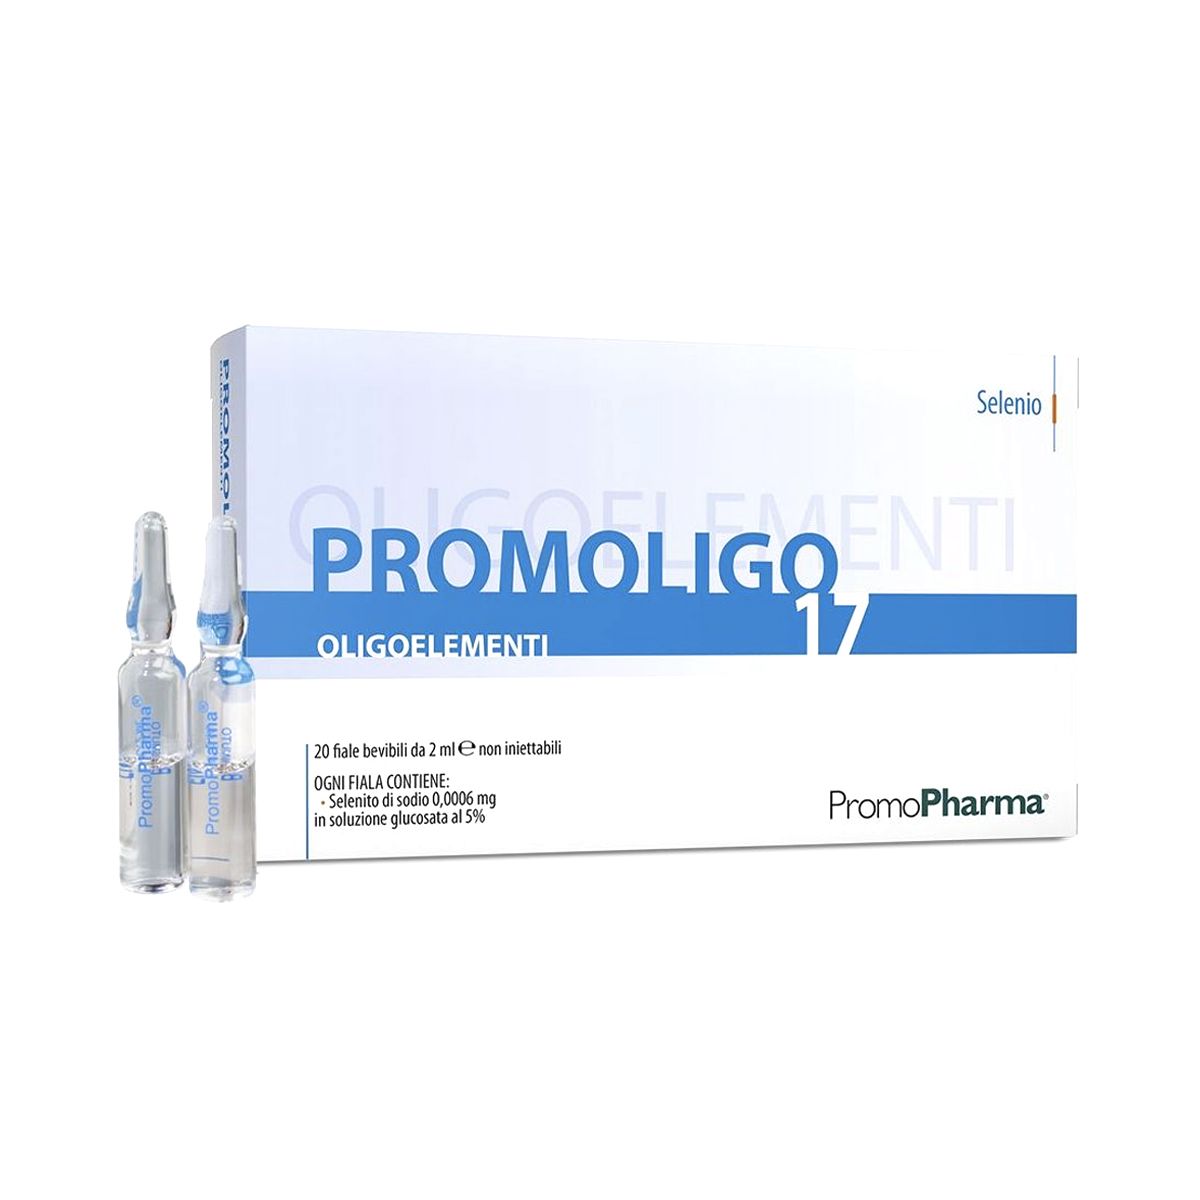 Promopharma Promoligo 17 Selenio 20 Fiale 2ml